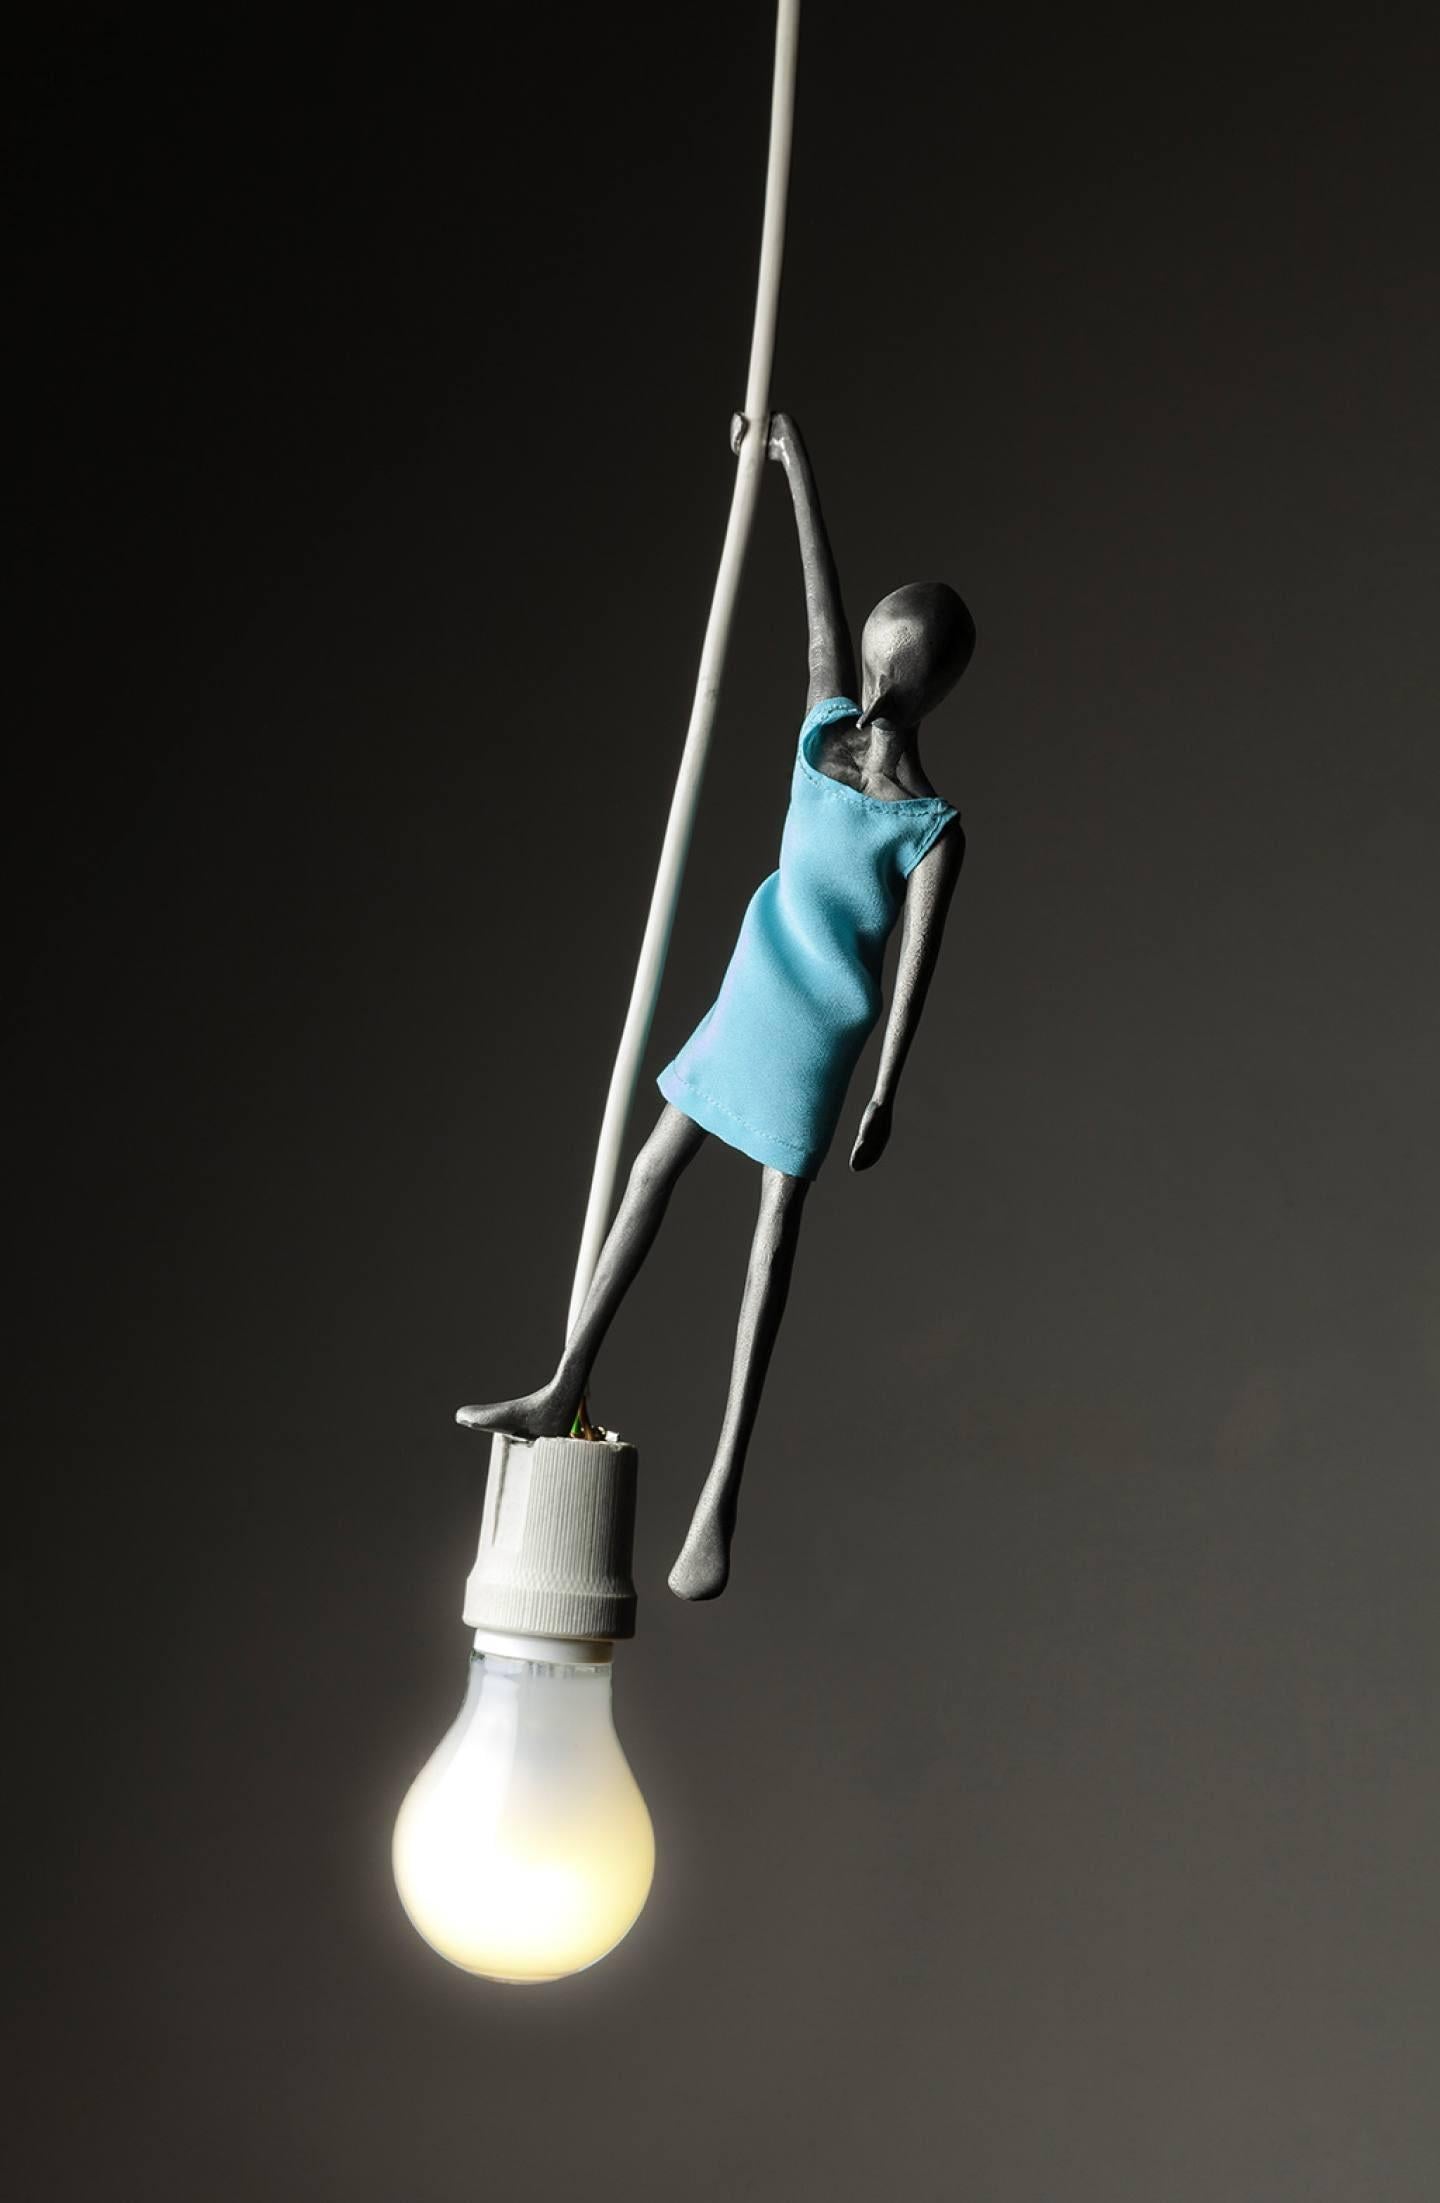 Pendelleuchte aus Aluminium im Wachsausschmelzverfahren für Dilmos Milano. Alex Pinna hat eine Kollektion von drei Pendelleuchten namens Lampwick, Blue Fairy und Duo entworfen. Diese Arbeit, Blue Fairy, ist eine kleine Skulptur, die auf einer